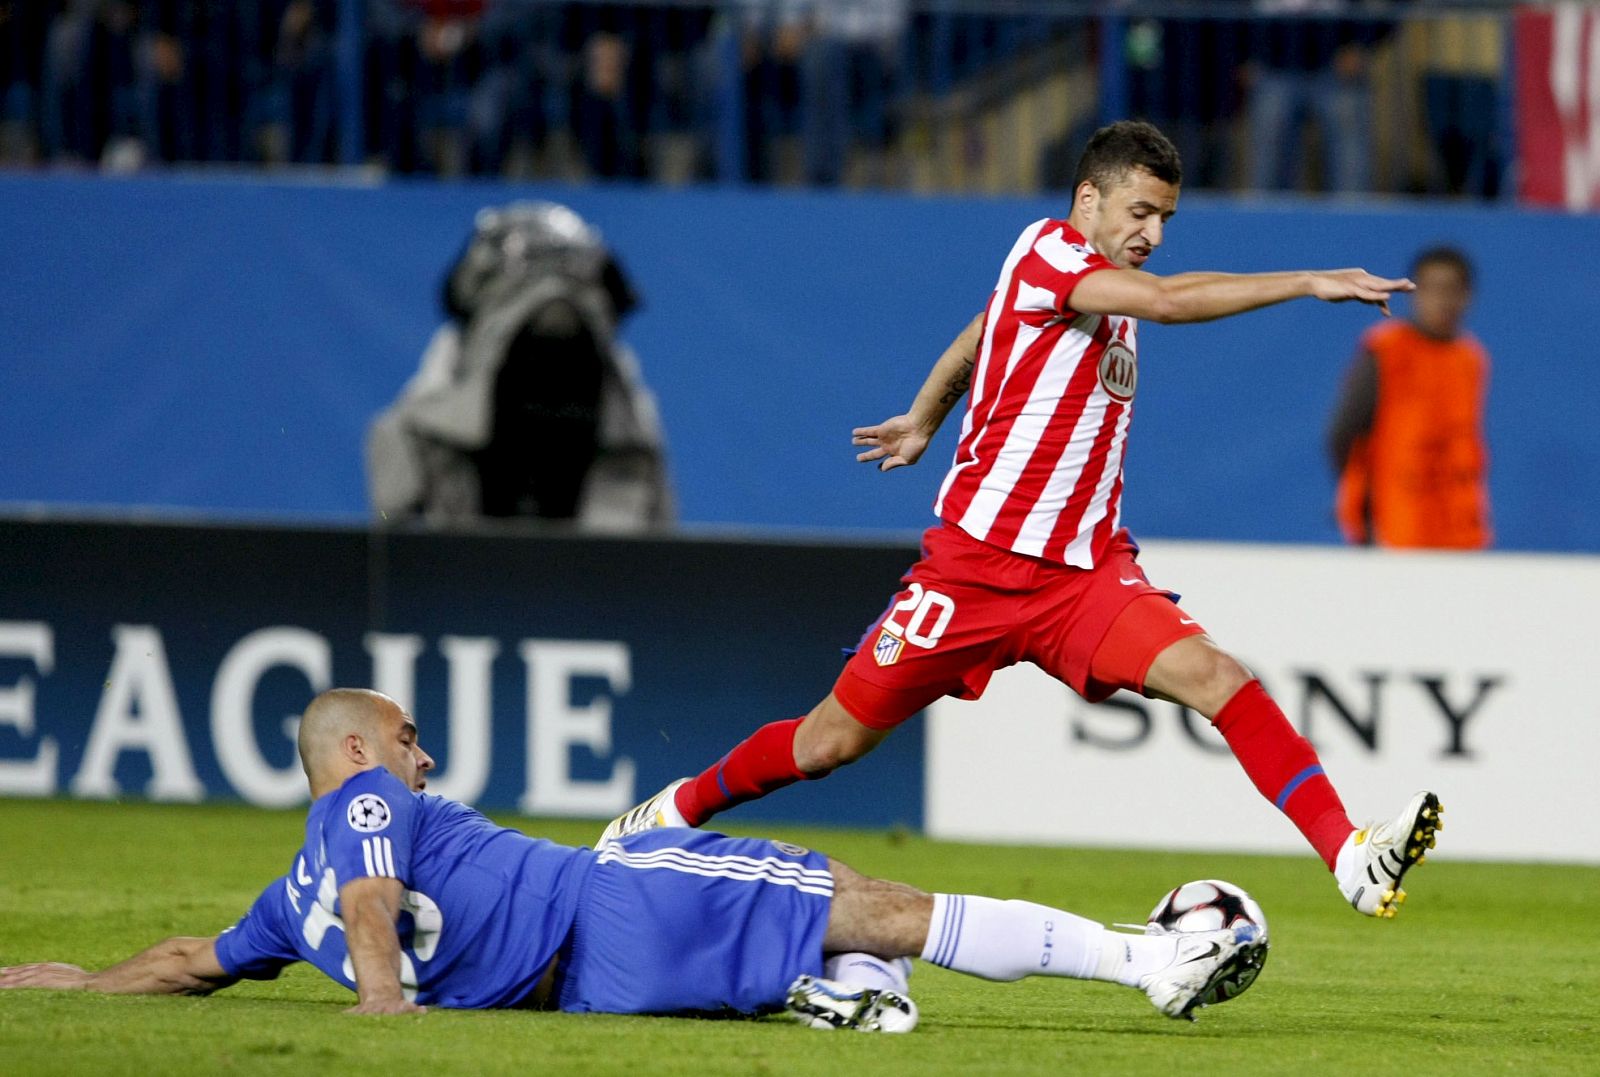 El centrocampista del Atlético de Madrid, Simao arrebata el balón al defensa del Chelsea, Alex.